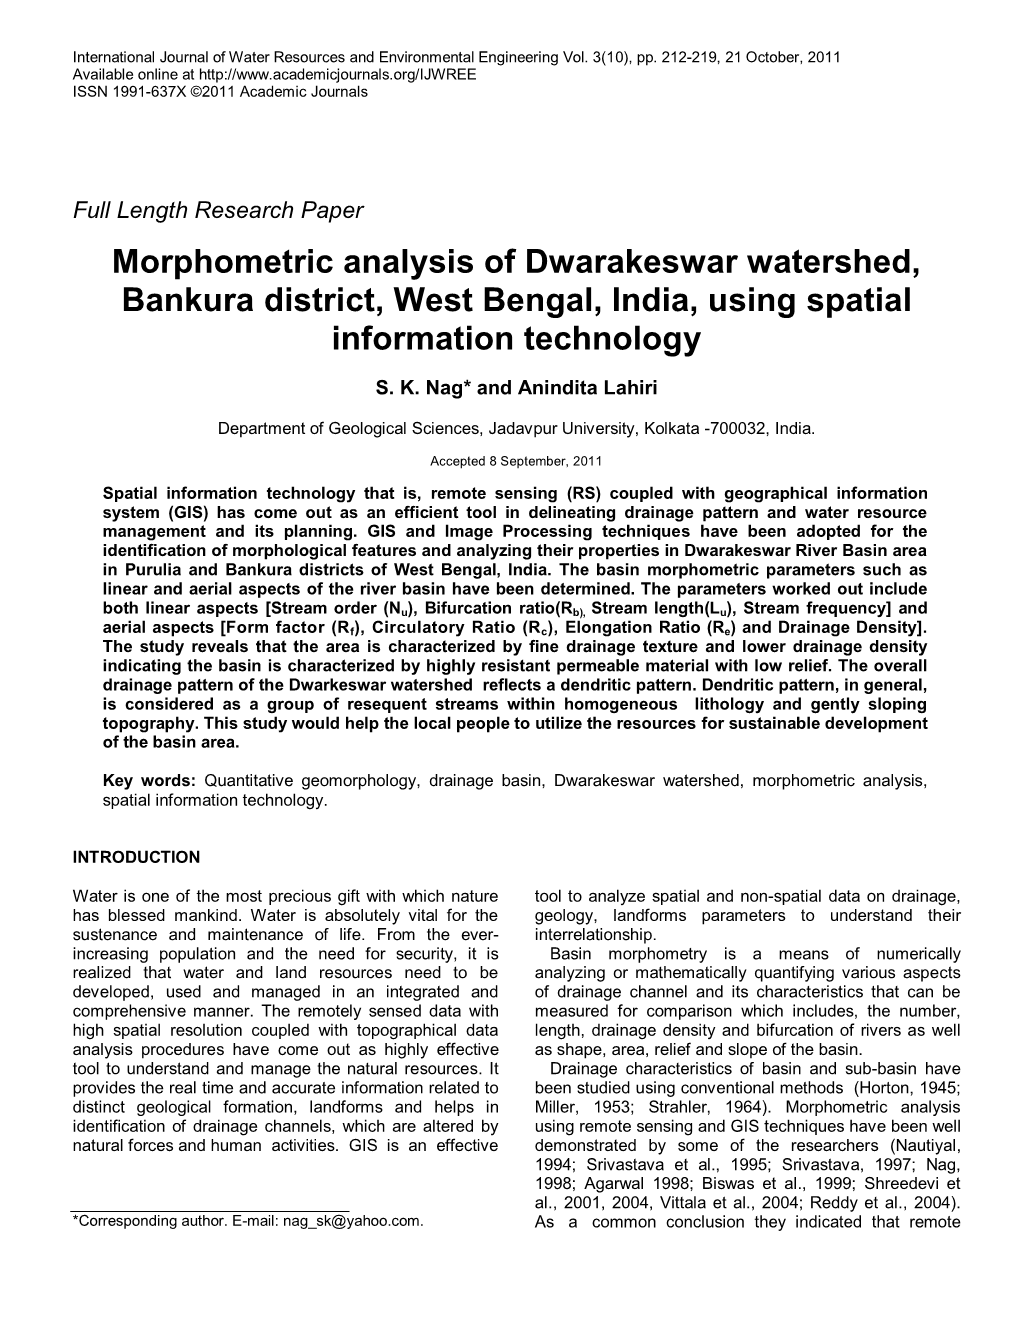 Morphometric Analysis of Dwarakeswar Watershed, Bankura District, West Bengal, India, Using Spatial Information Technology